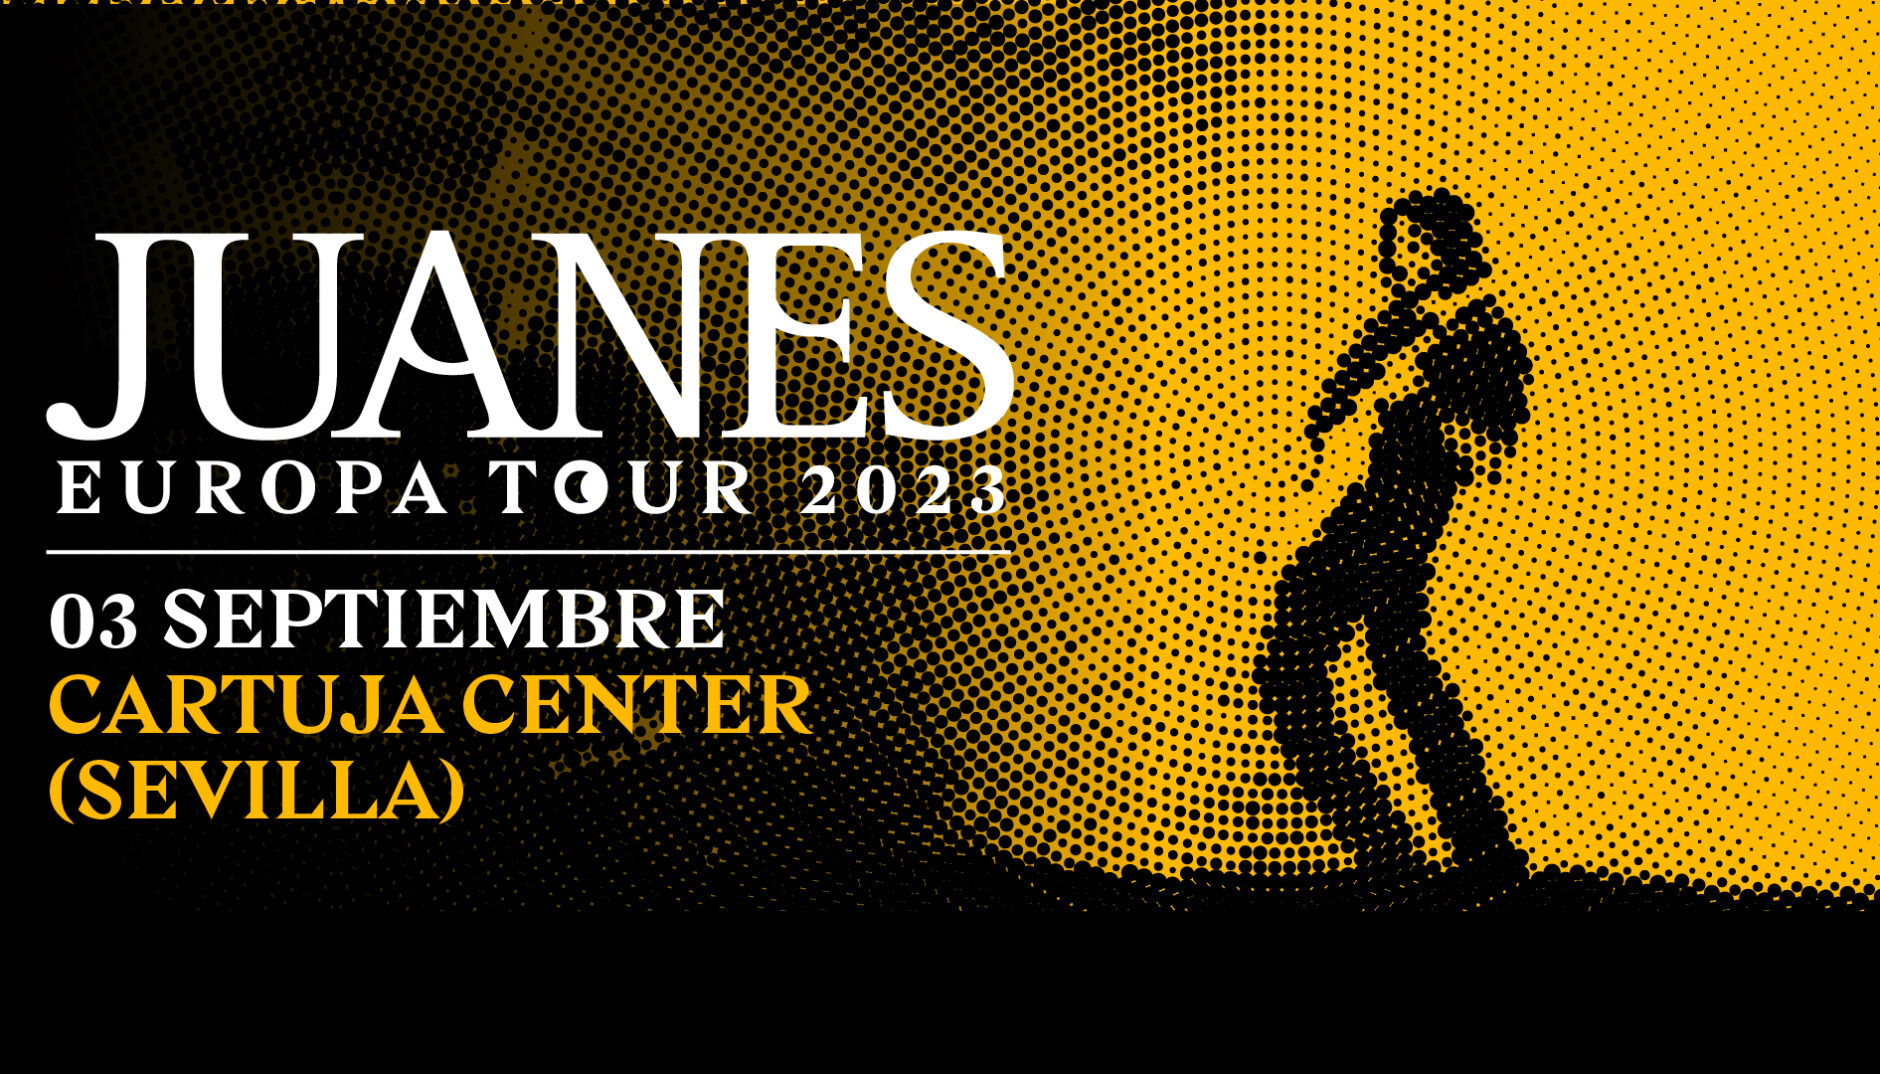 JUANES - EUROPA TOUR 2023 1